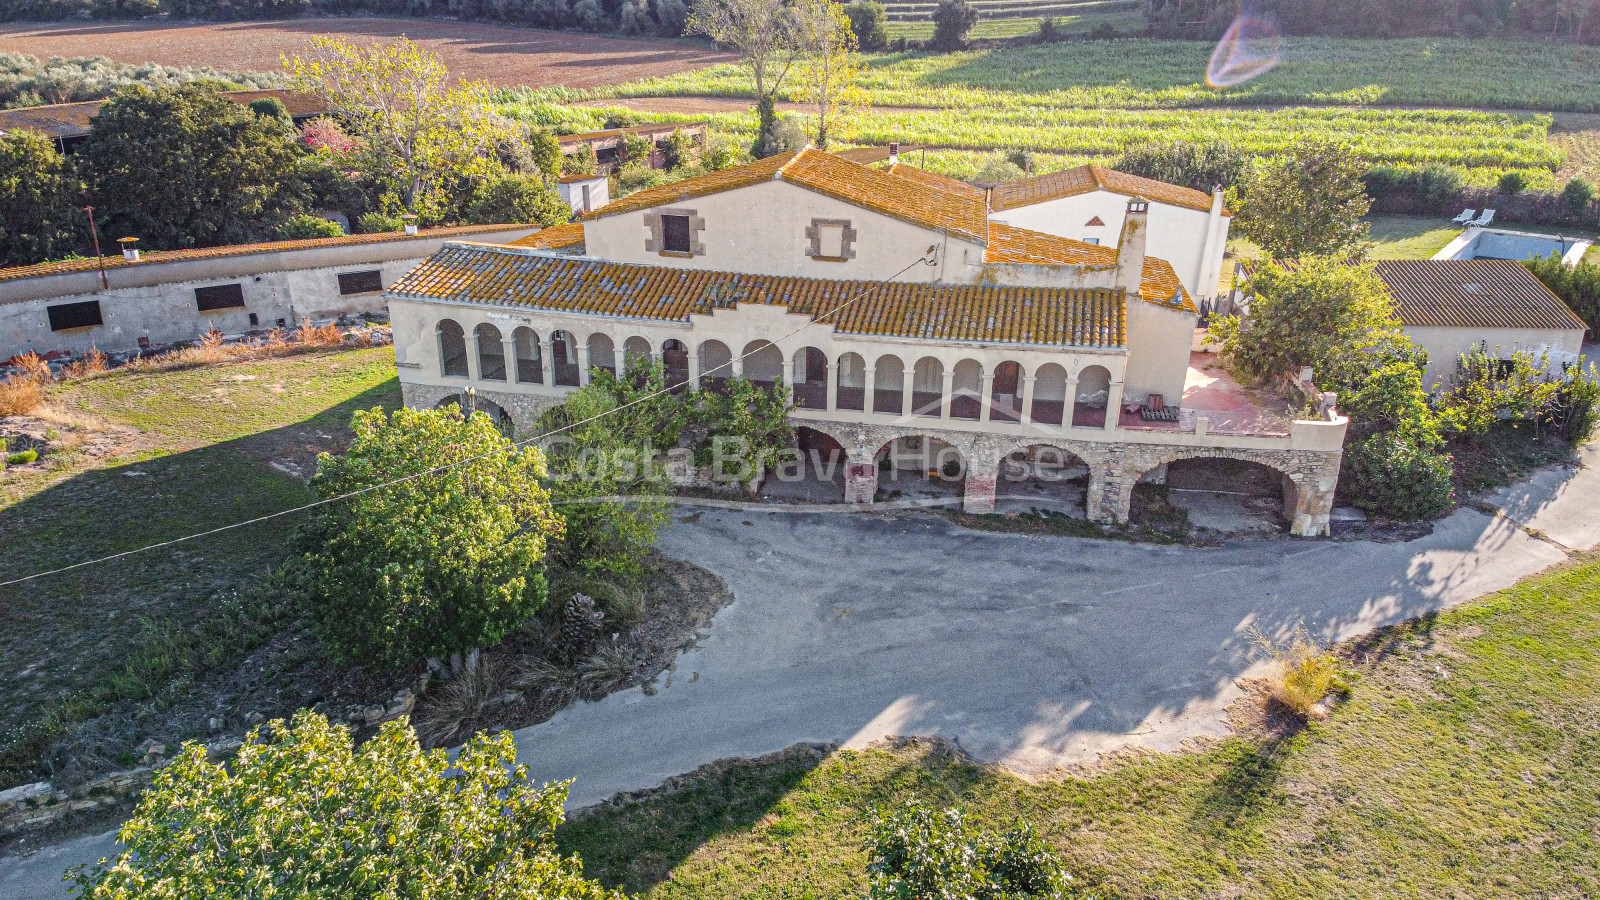 Maison de campagne pour projet hôtelier dans le Baix Empordà